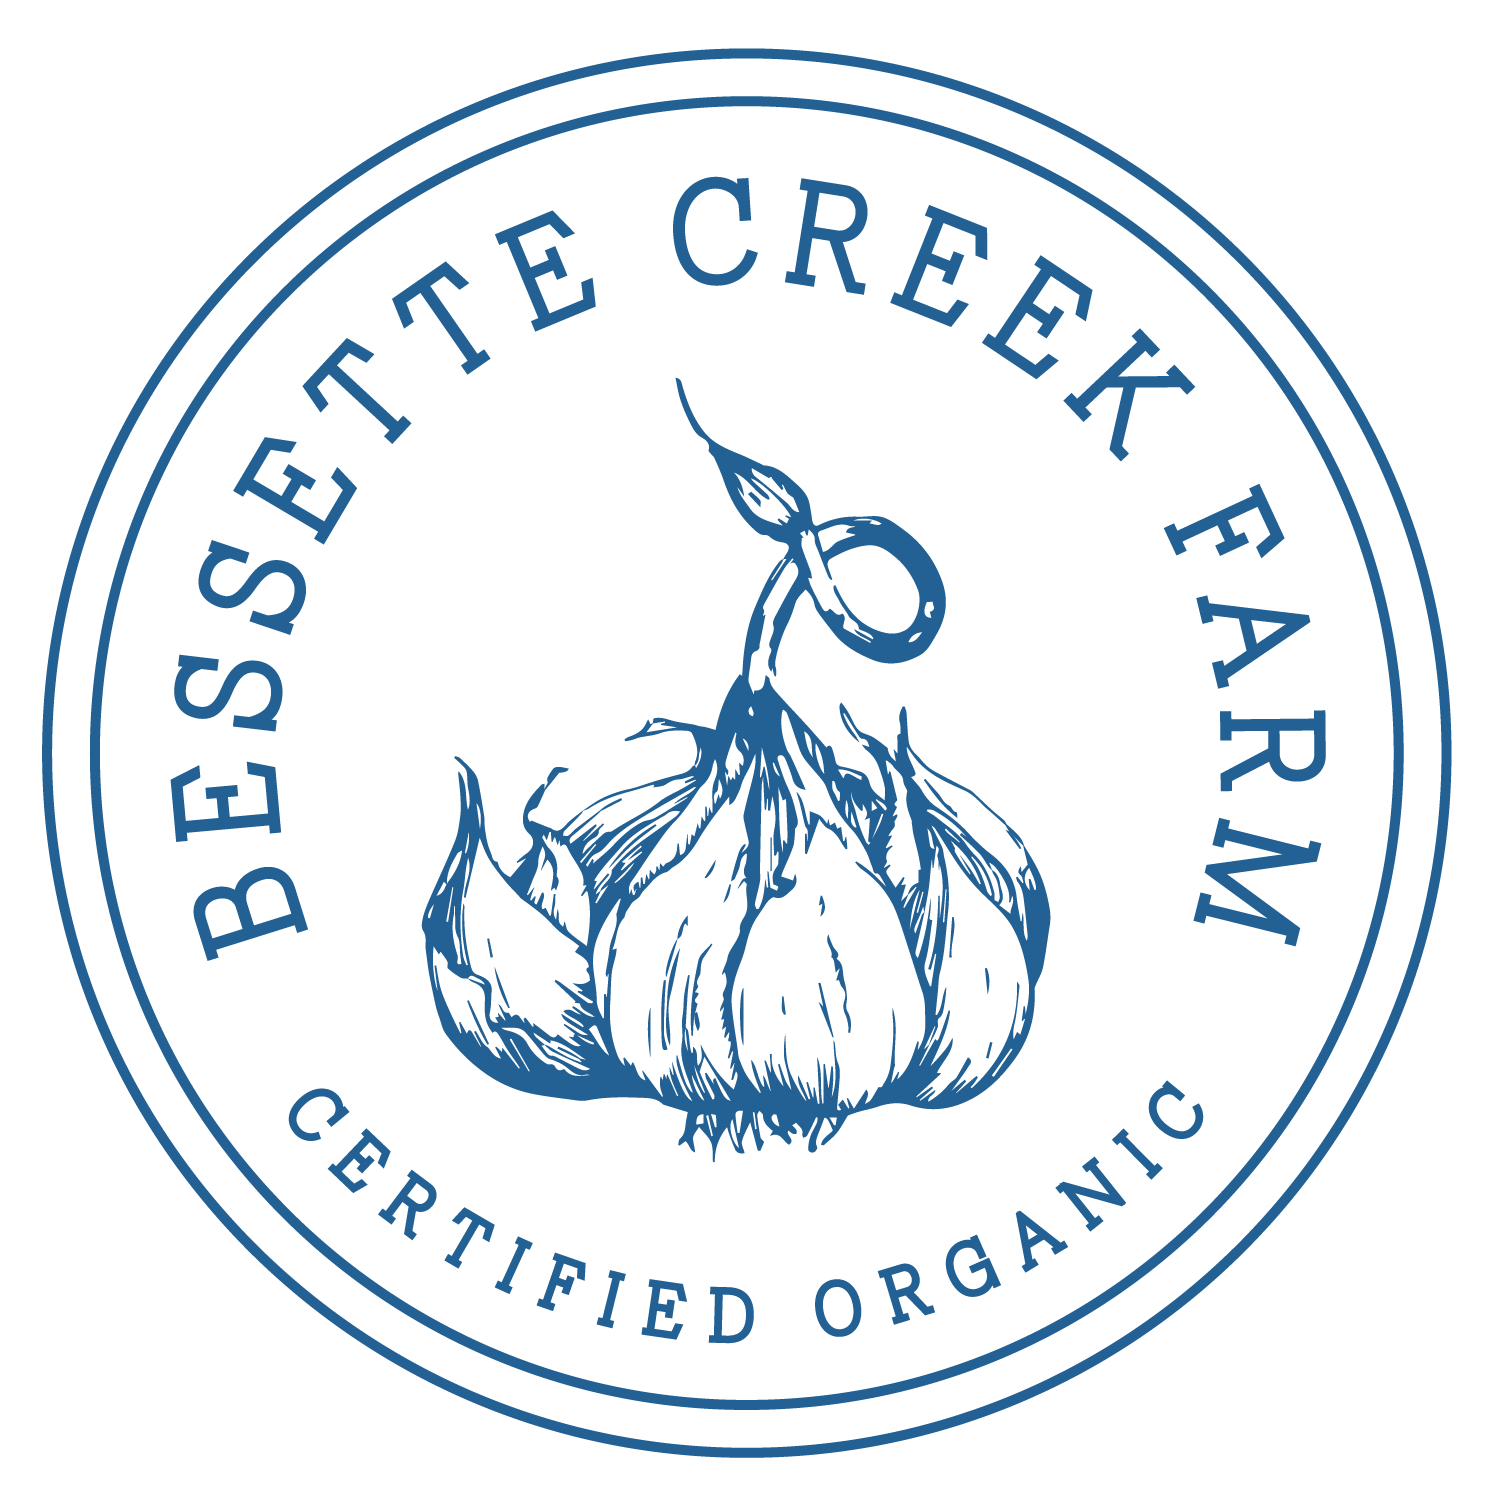 Bessette Creek Farm